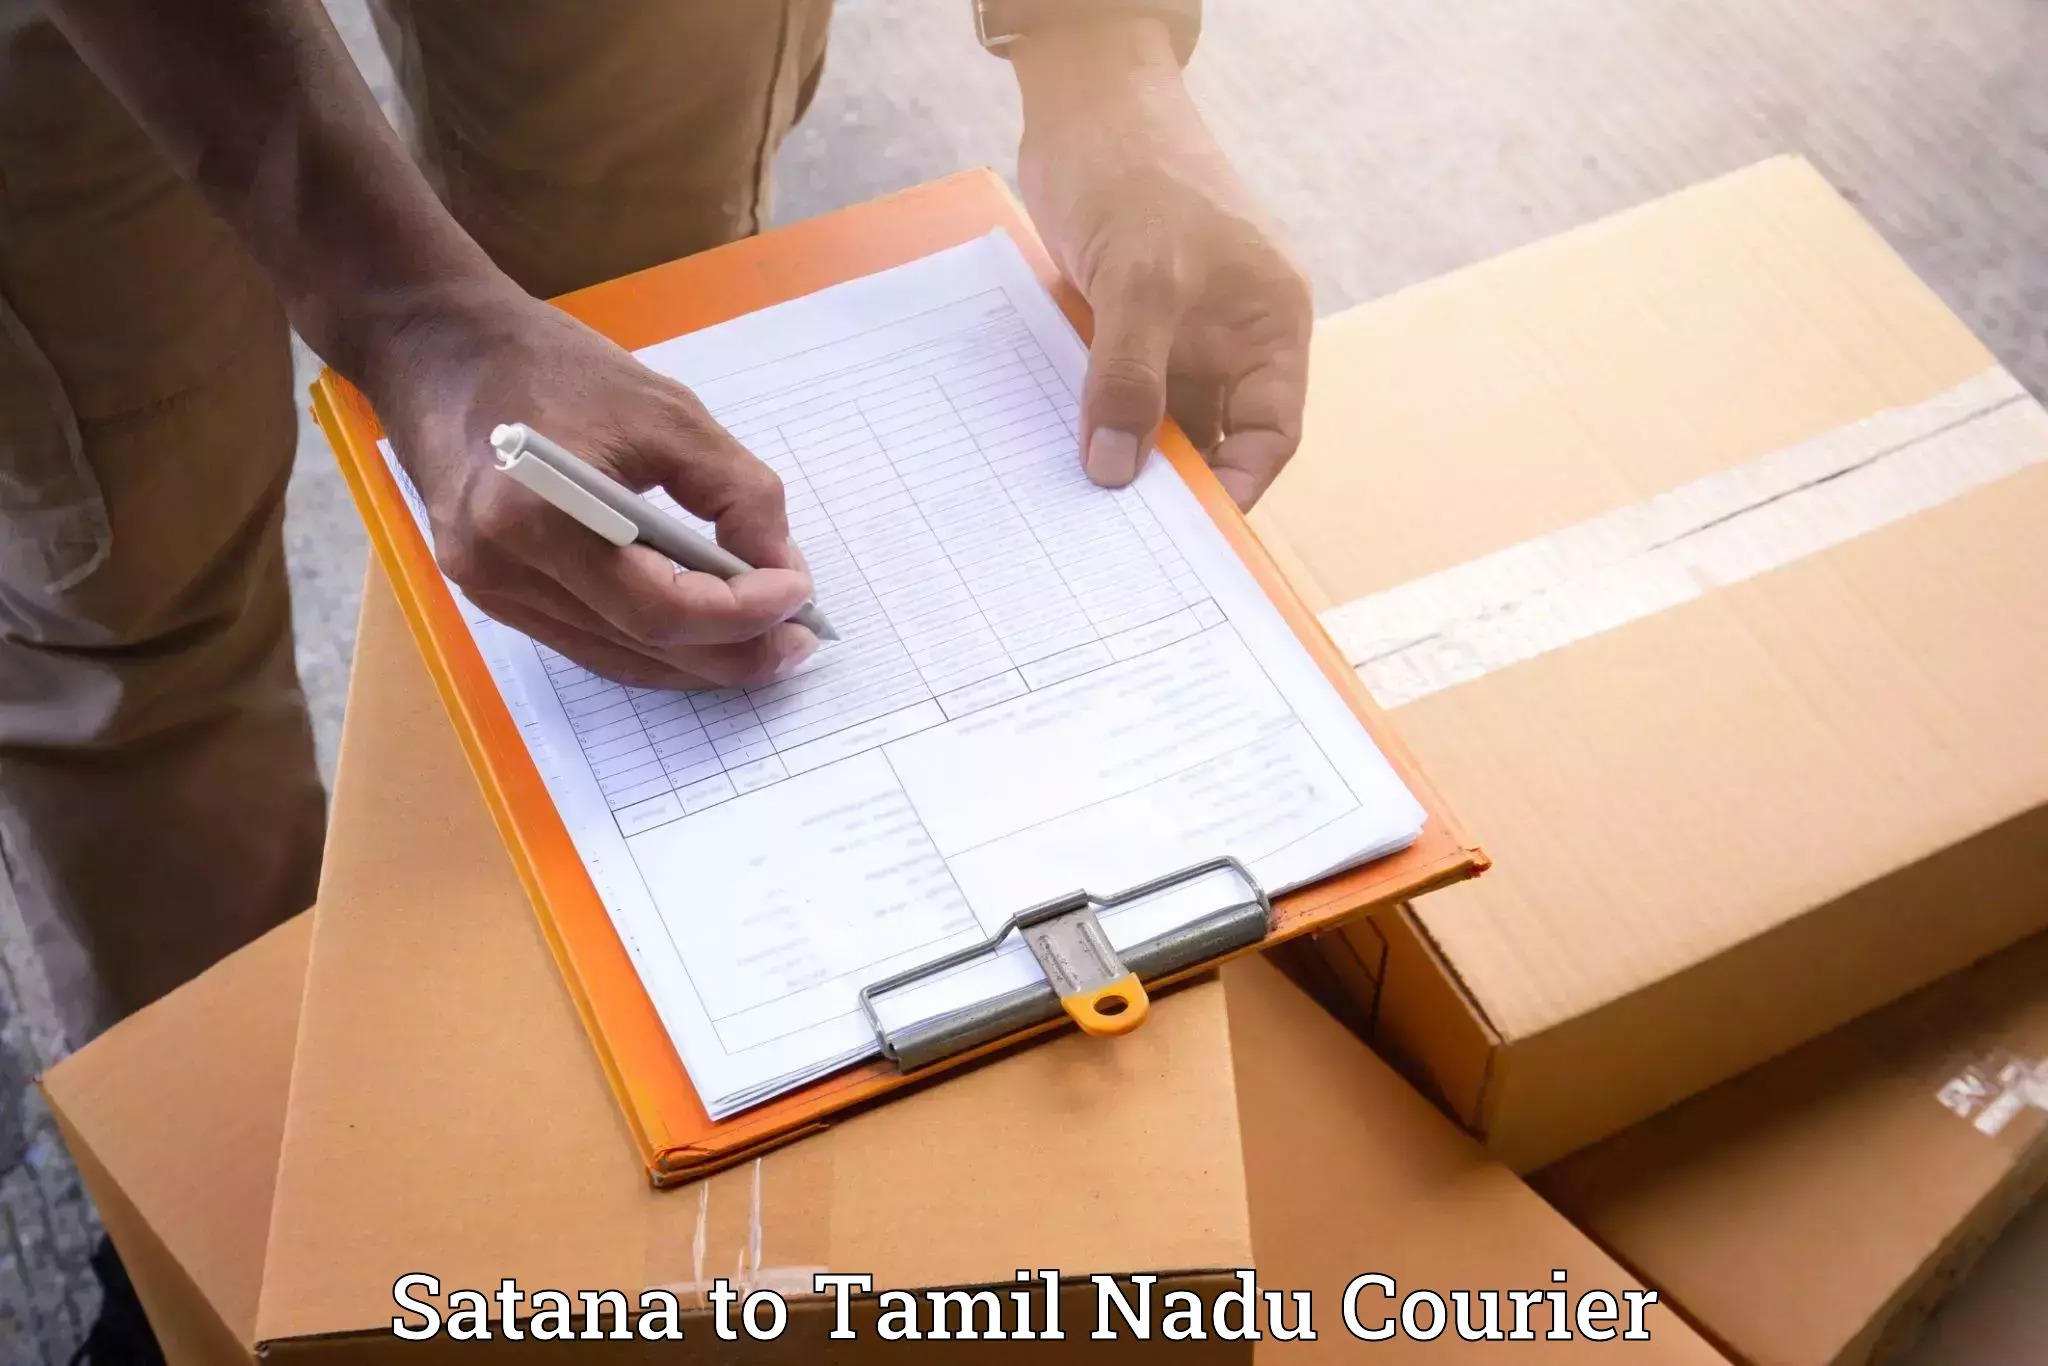 Comprehensive moving assistance Satana to Tirupur